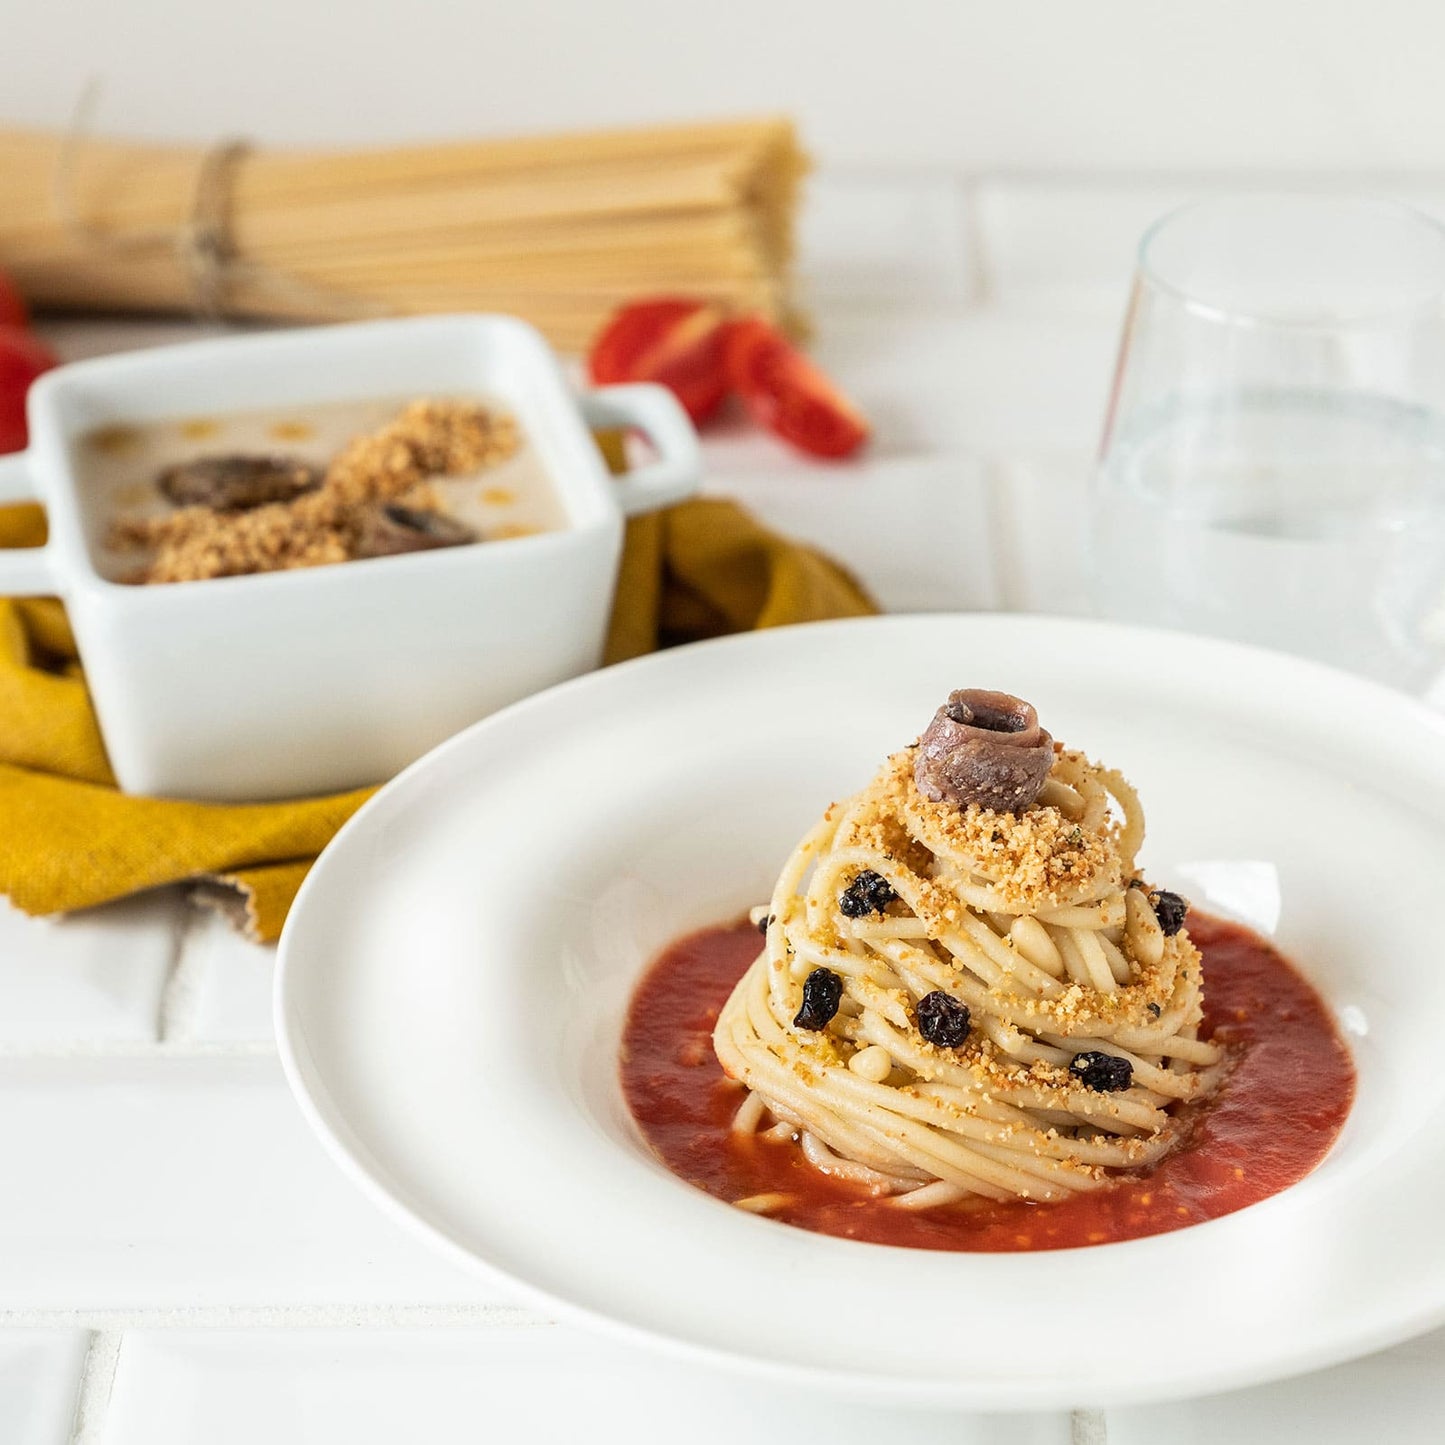 La cena siciliana: crema di cannellini e spaghetti alle alici